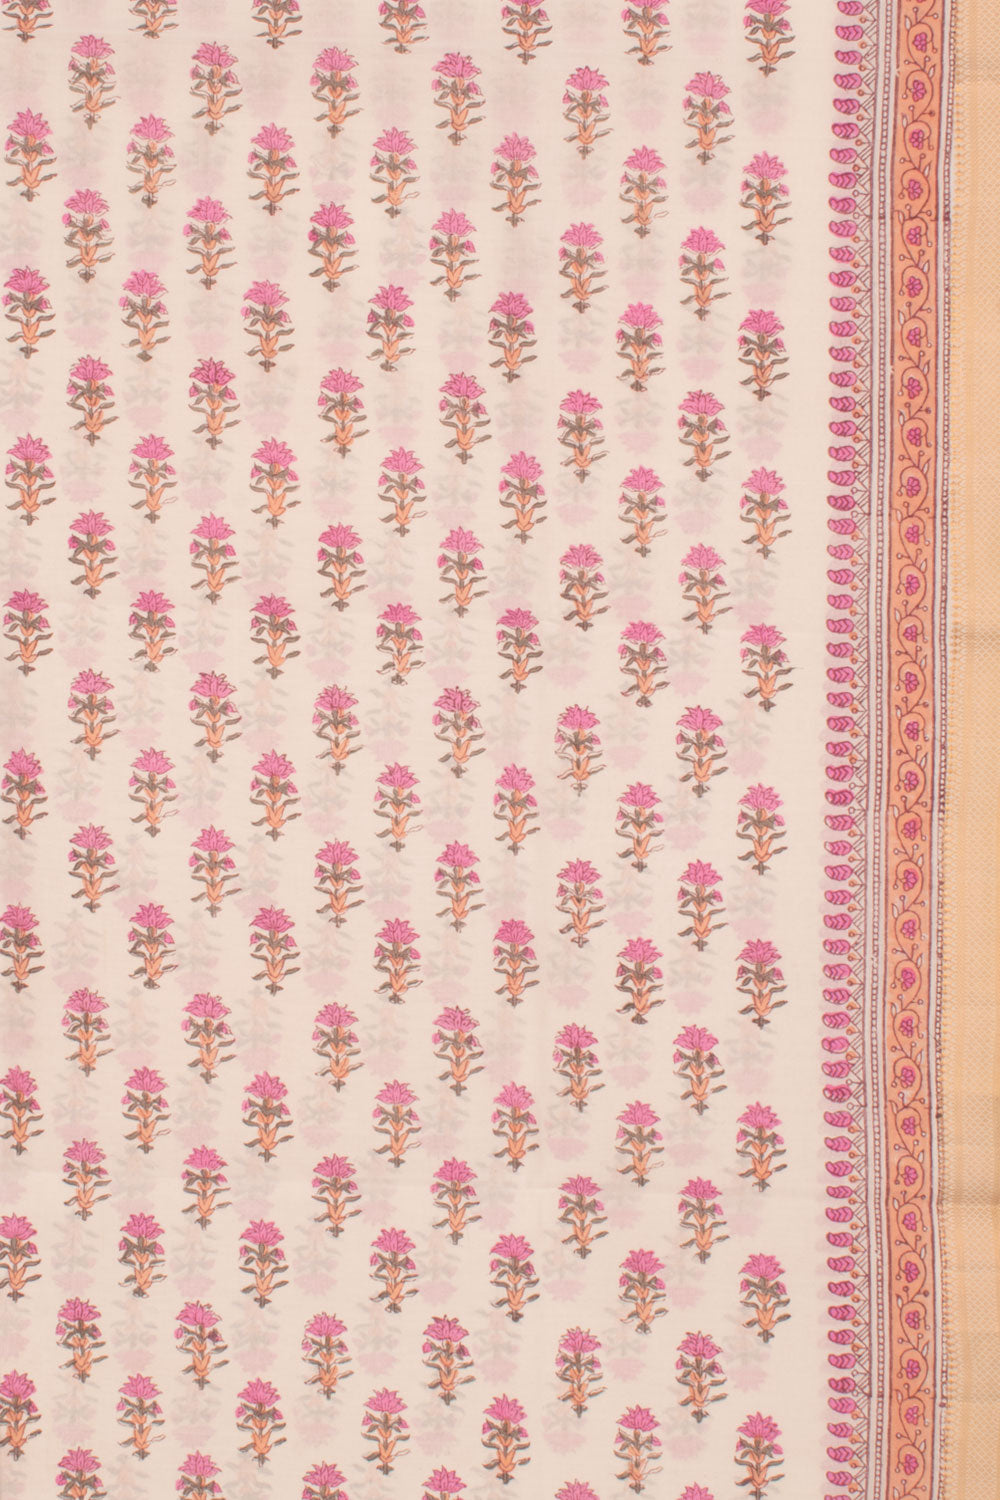 Hand Block Printed Mangalgiri Cotton Salwar Suit Material 10058793